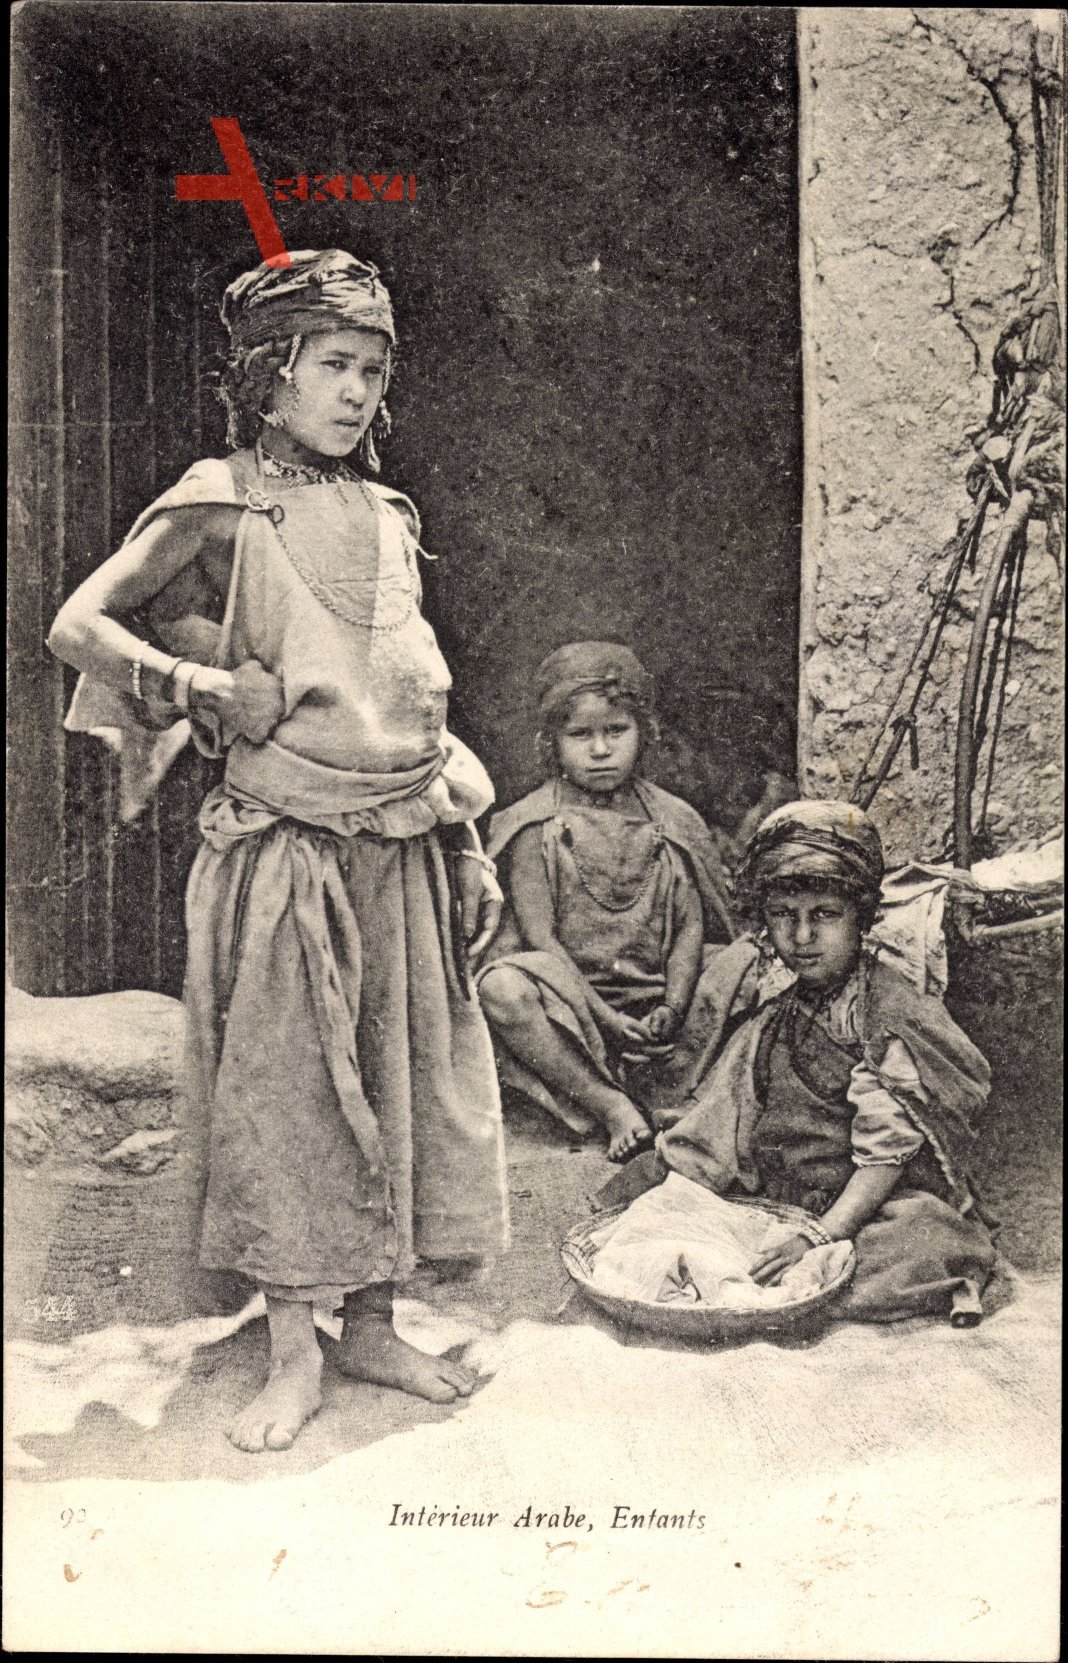 Interieur Arabe, Enfants, drei kleine Kinder vor einem Haus, Maghreb